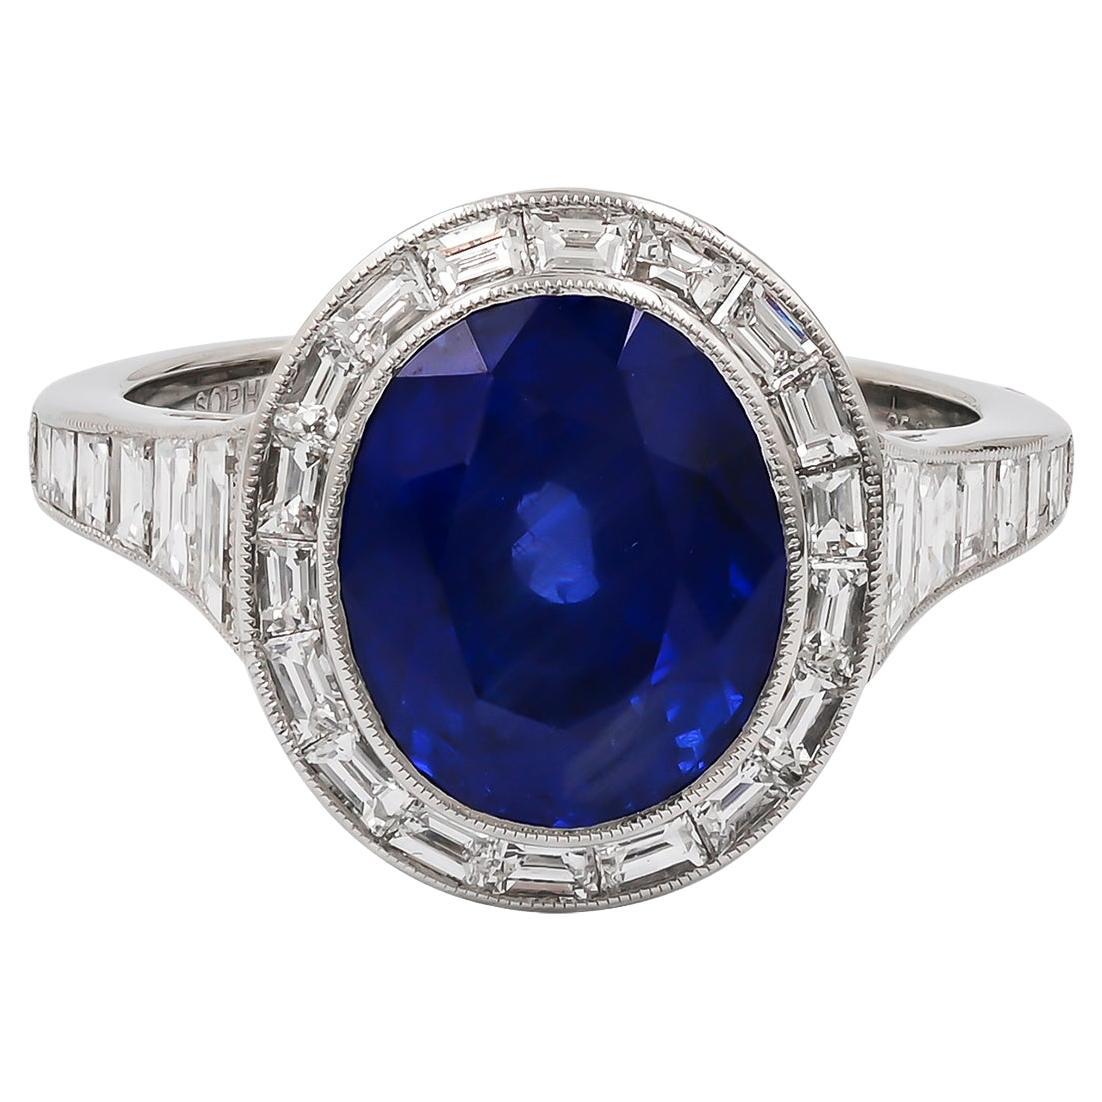 Sophia D. 5.07 Carat Blue Sapphire Platinum Ring